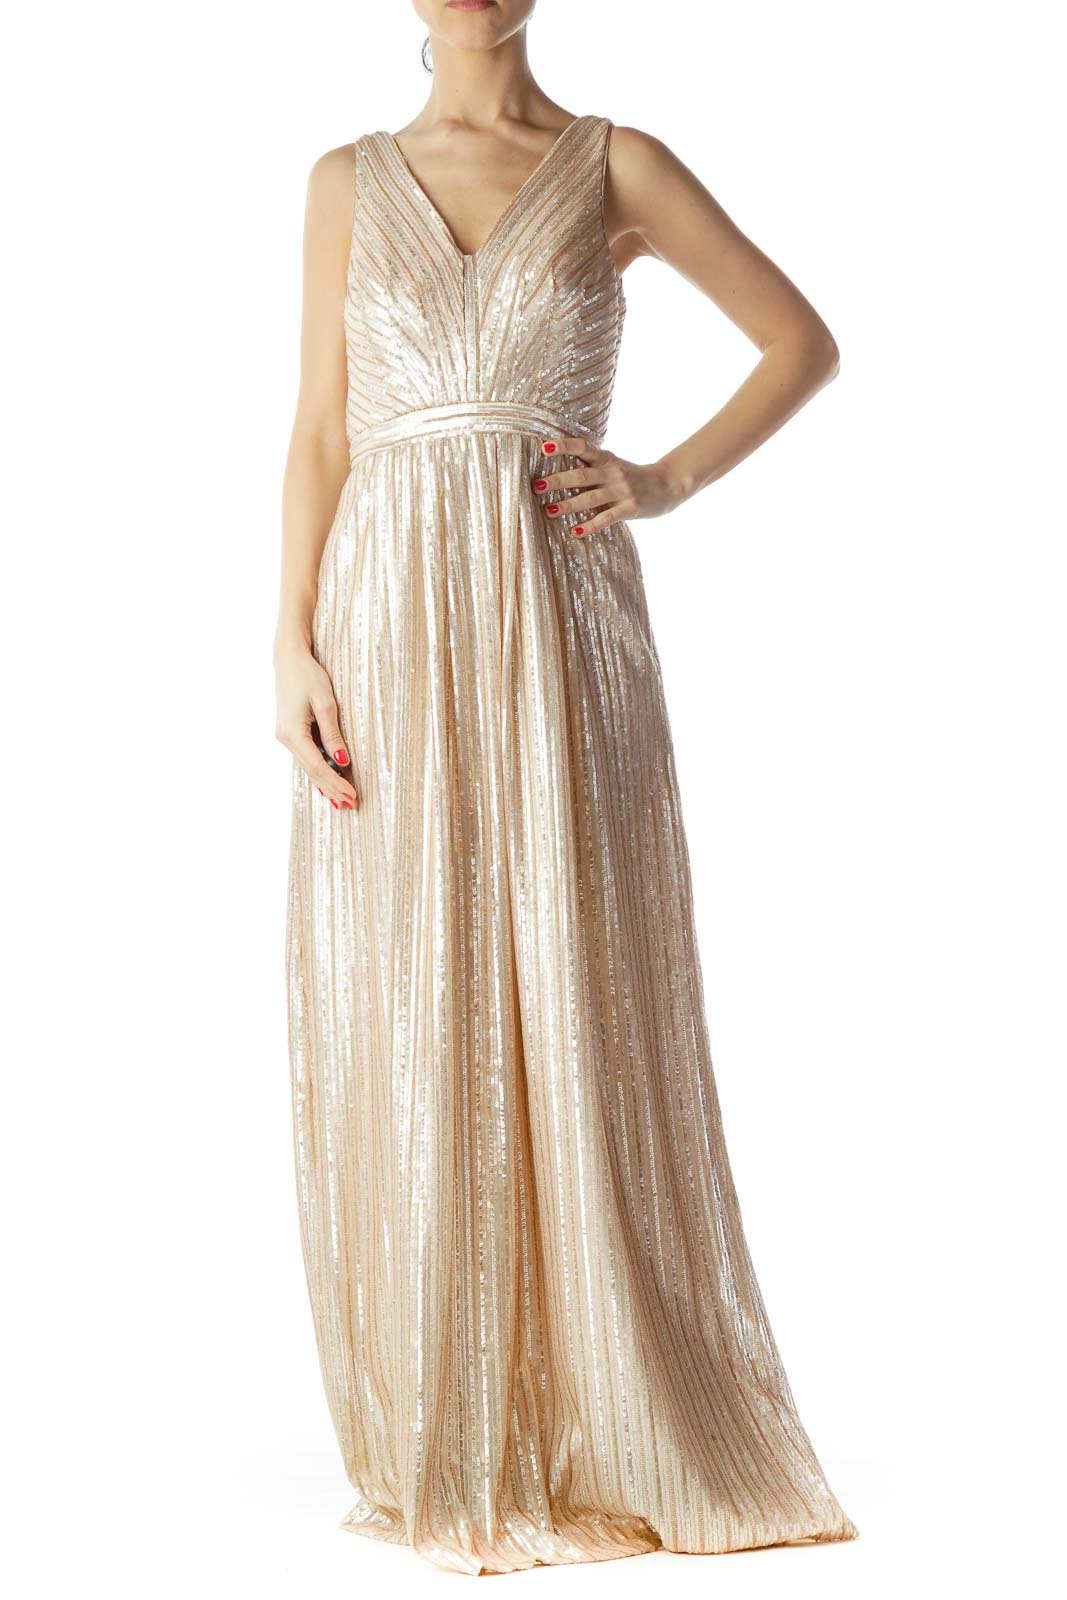 Rose Gold Sequined Body V-Neck Evening Dress Front